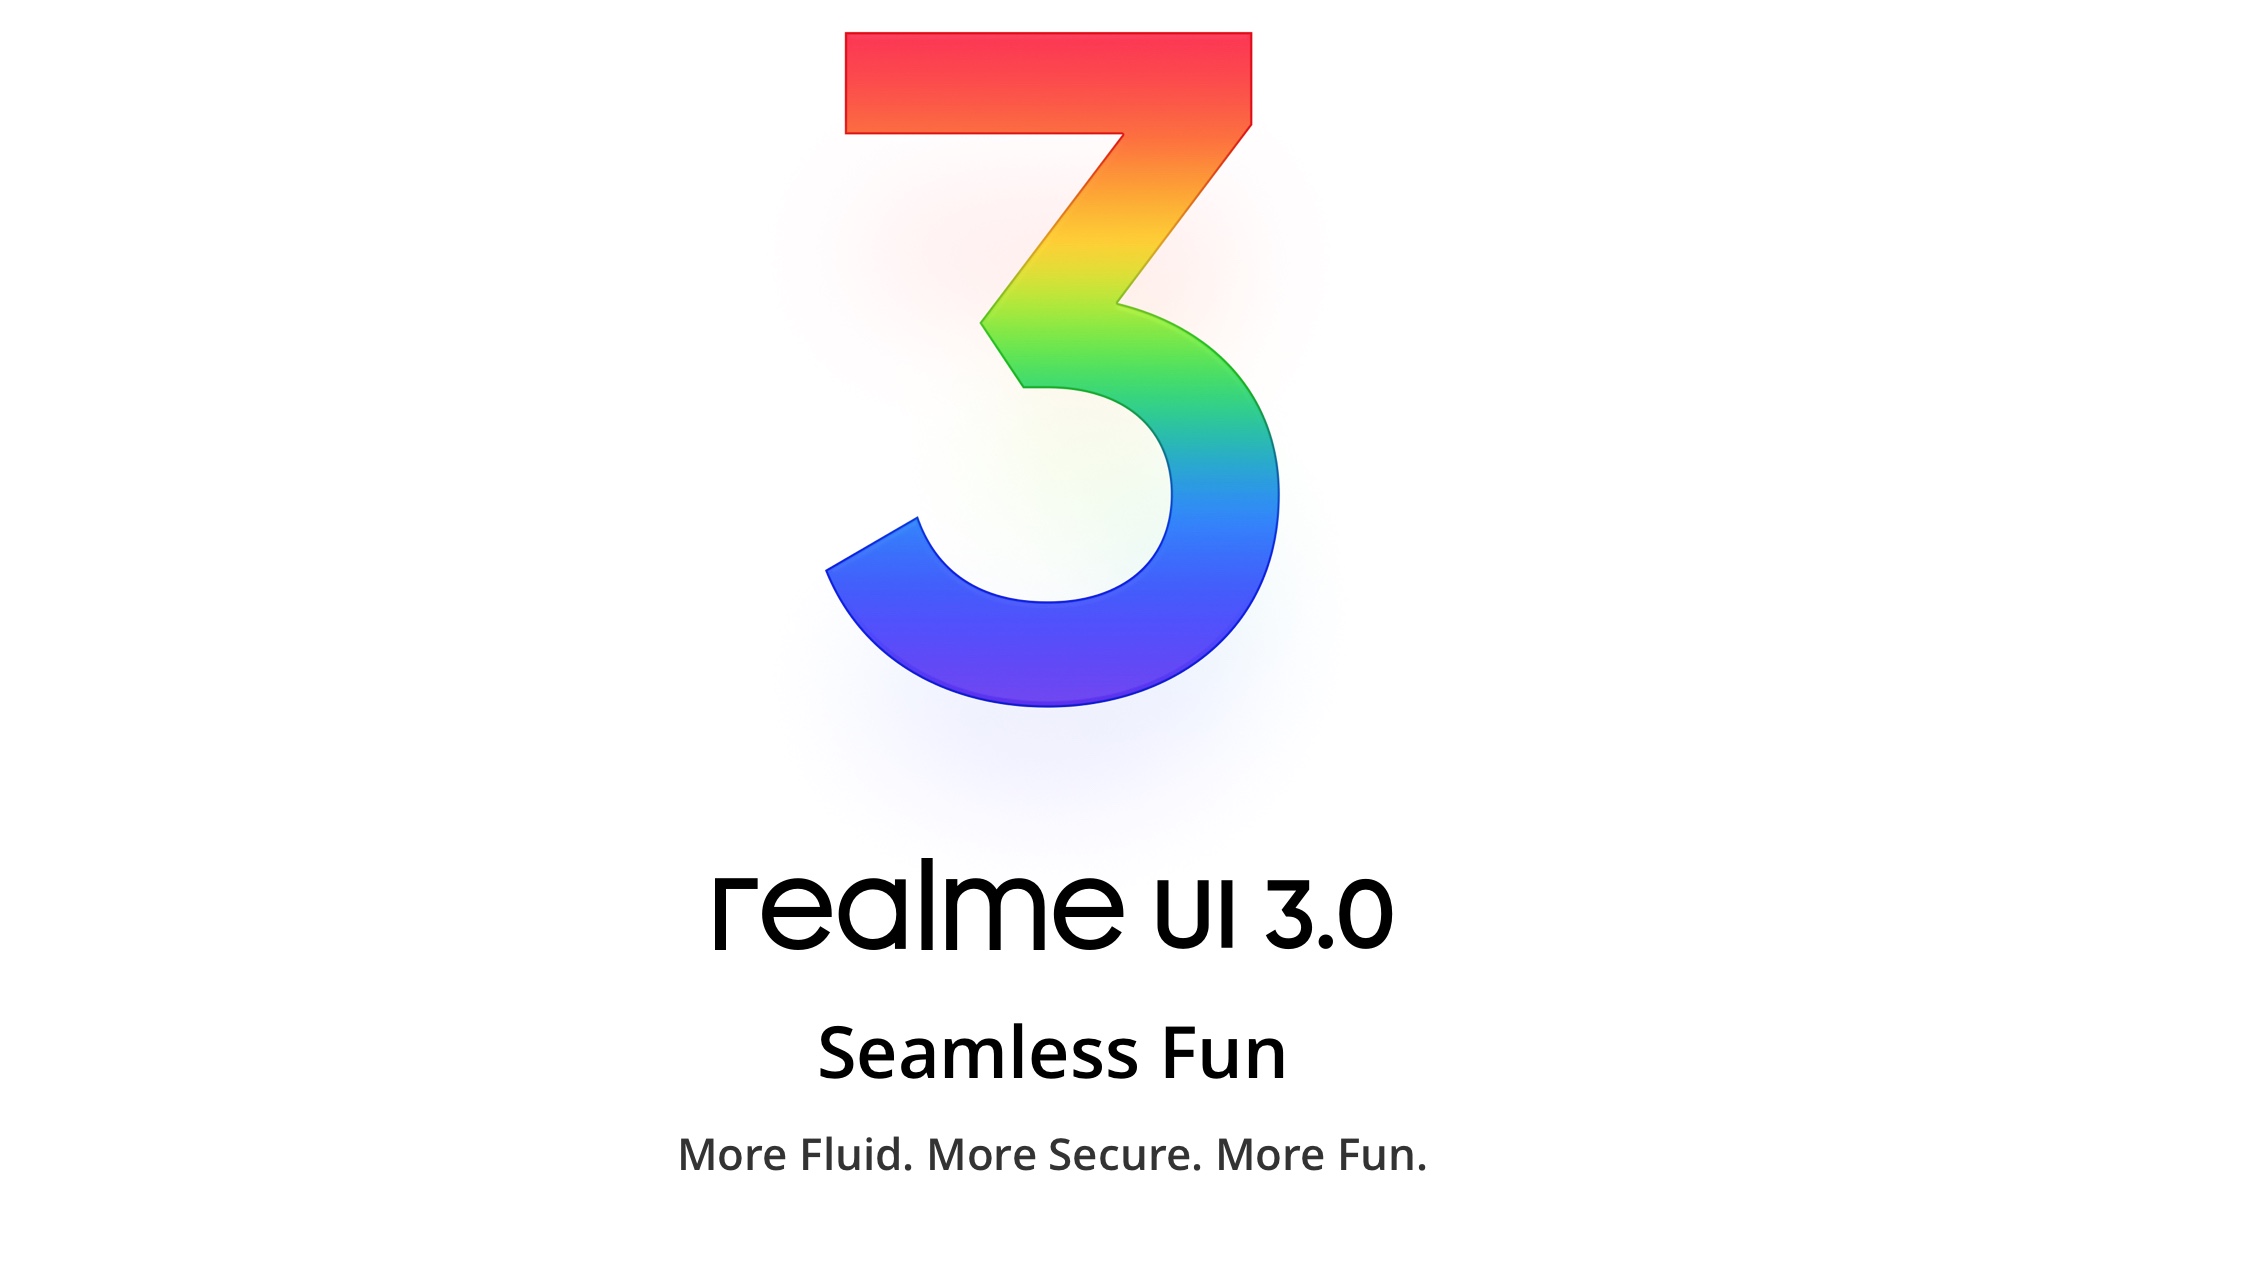 تعرفوا على واجهة Realme UI 3.0 والمميزات الجديدة التي تقدمها لمحبي ريل مي